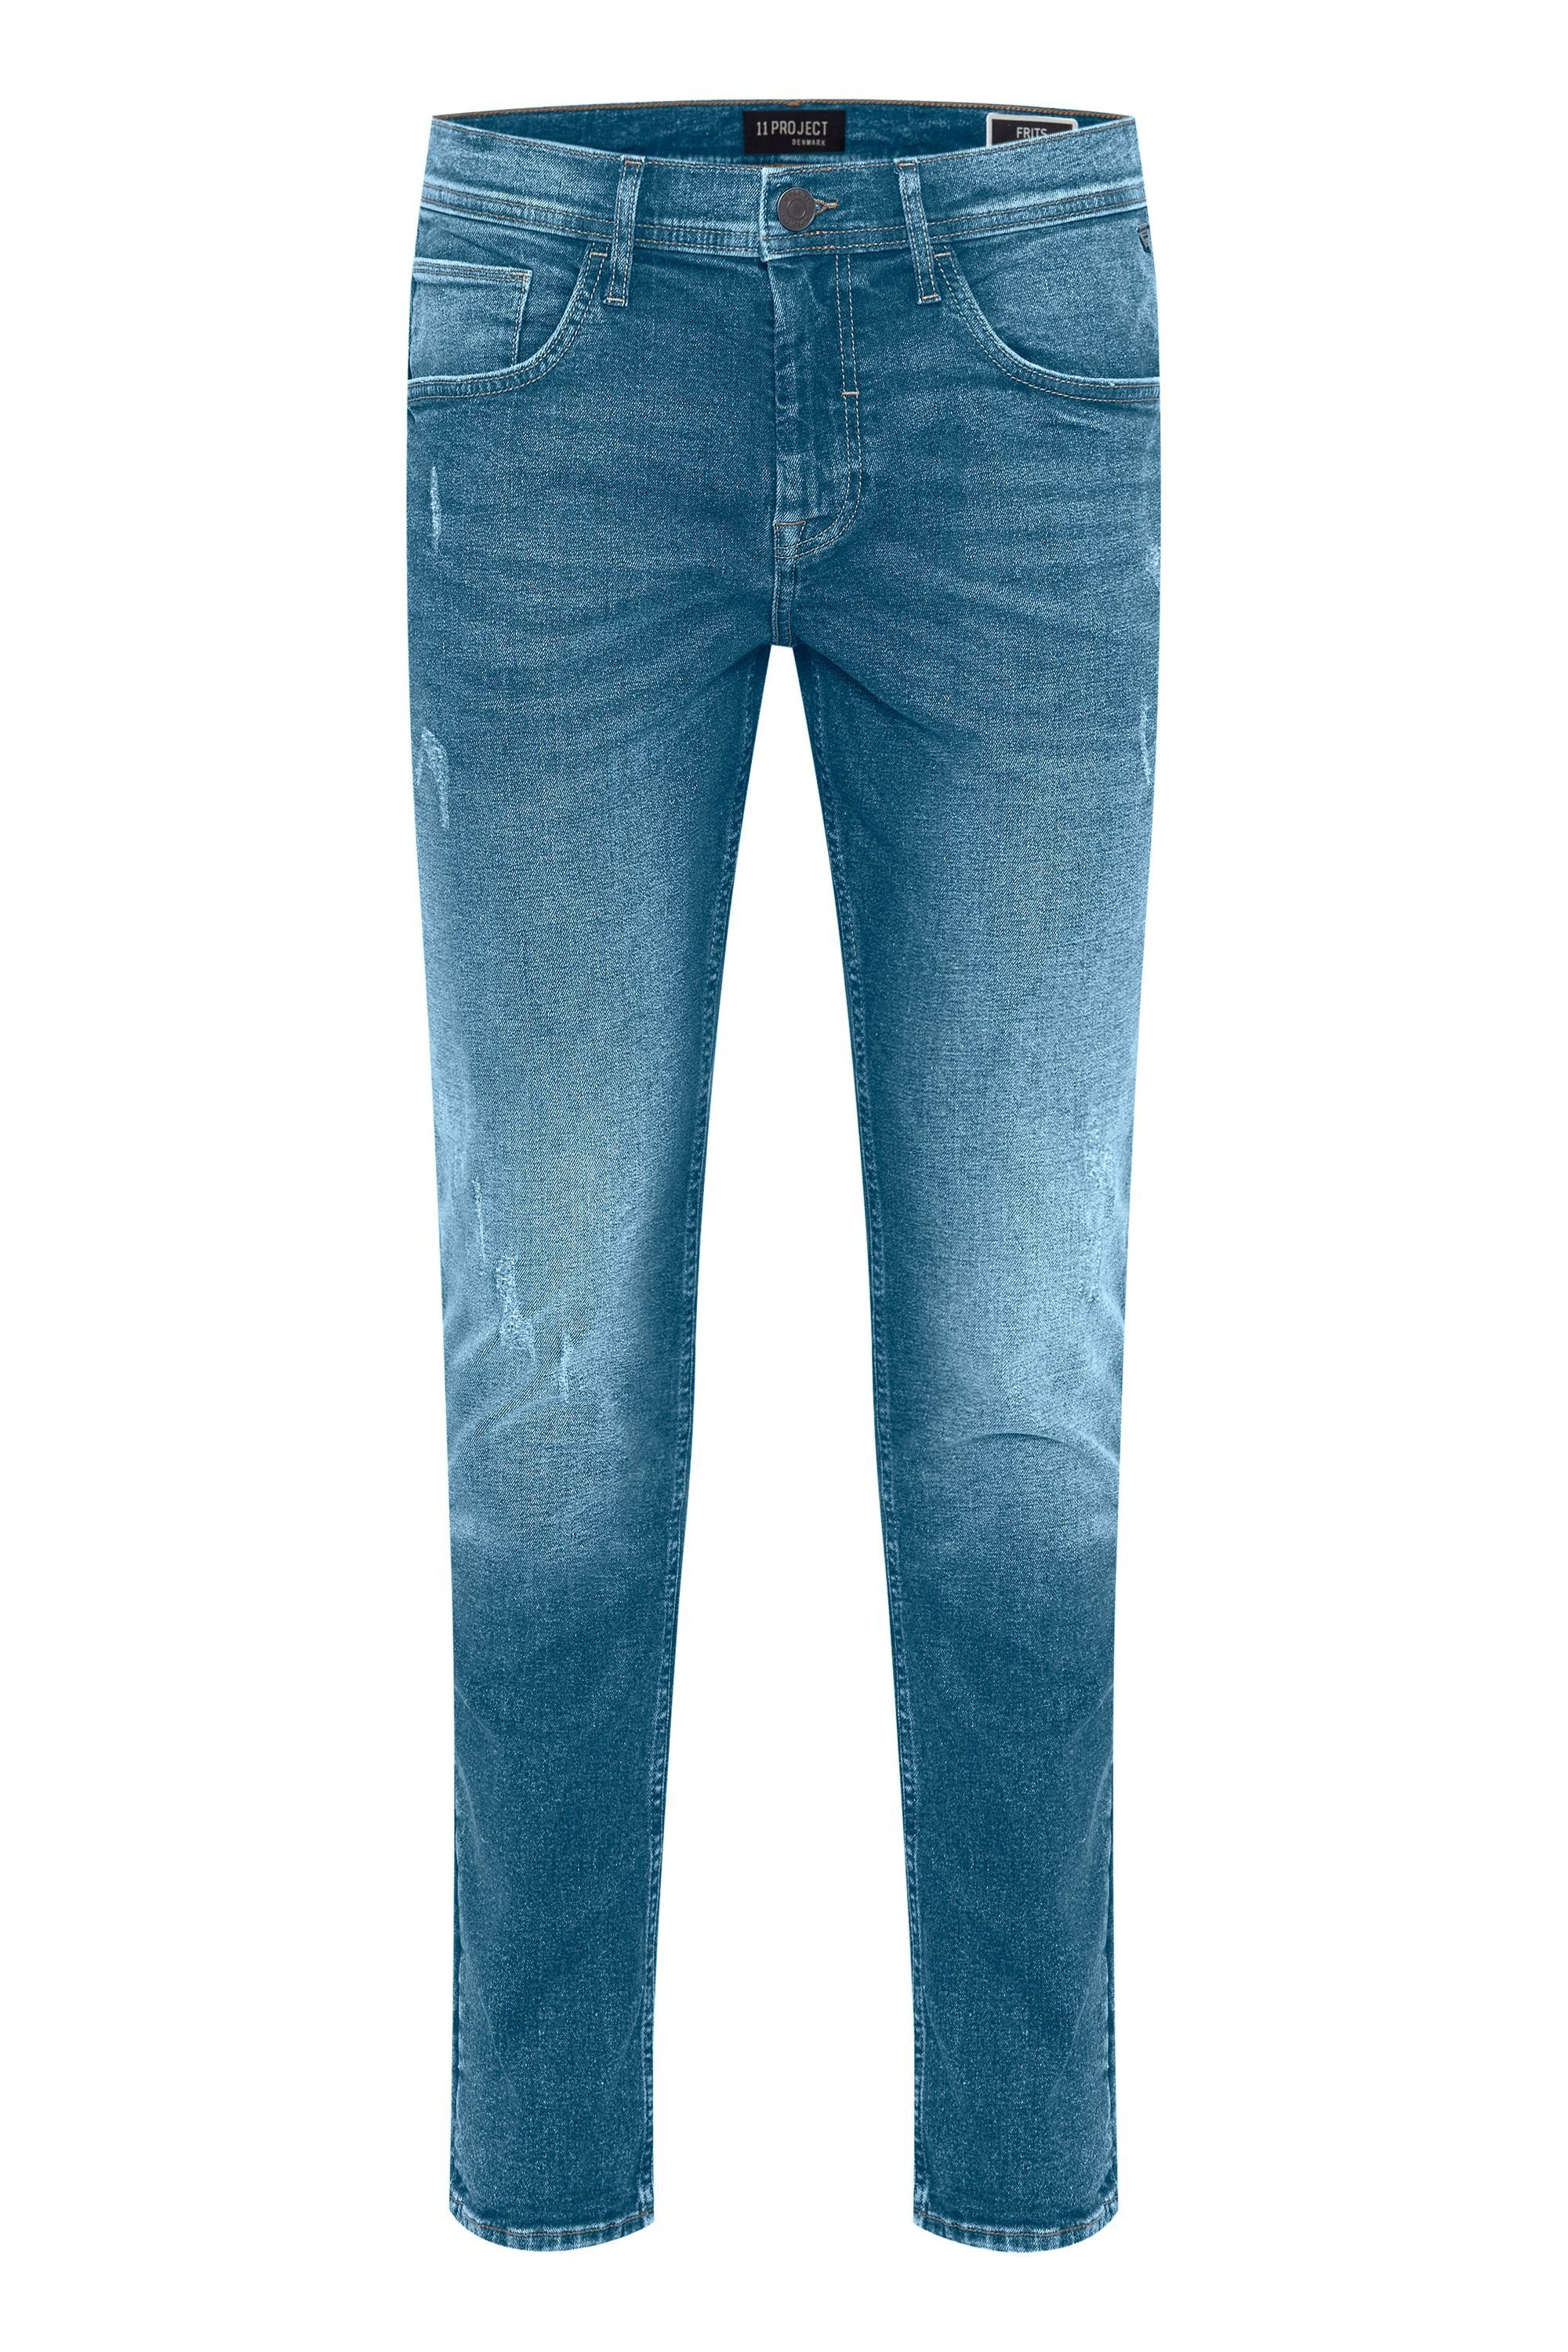 Project Project Denim light 11 PRVerner Gerade 11 blue Jeans